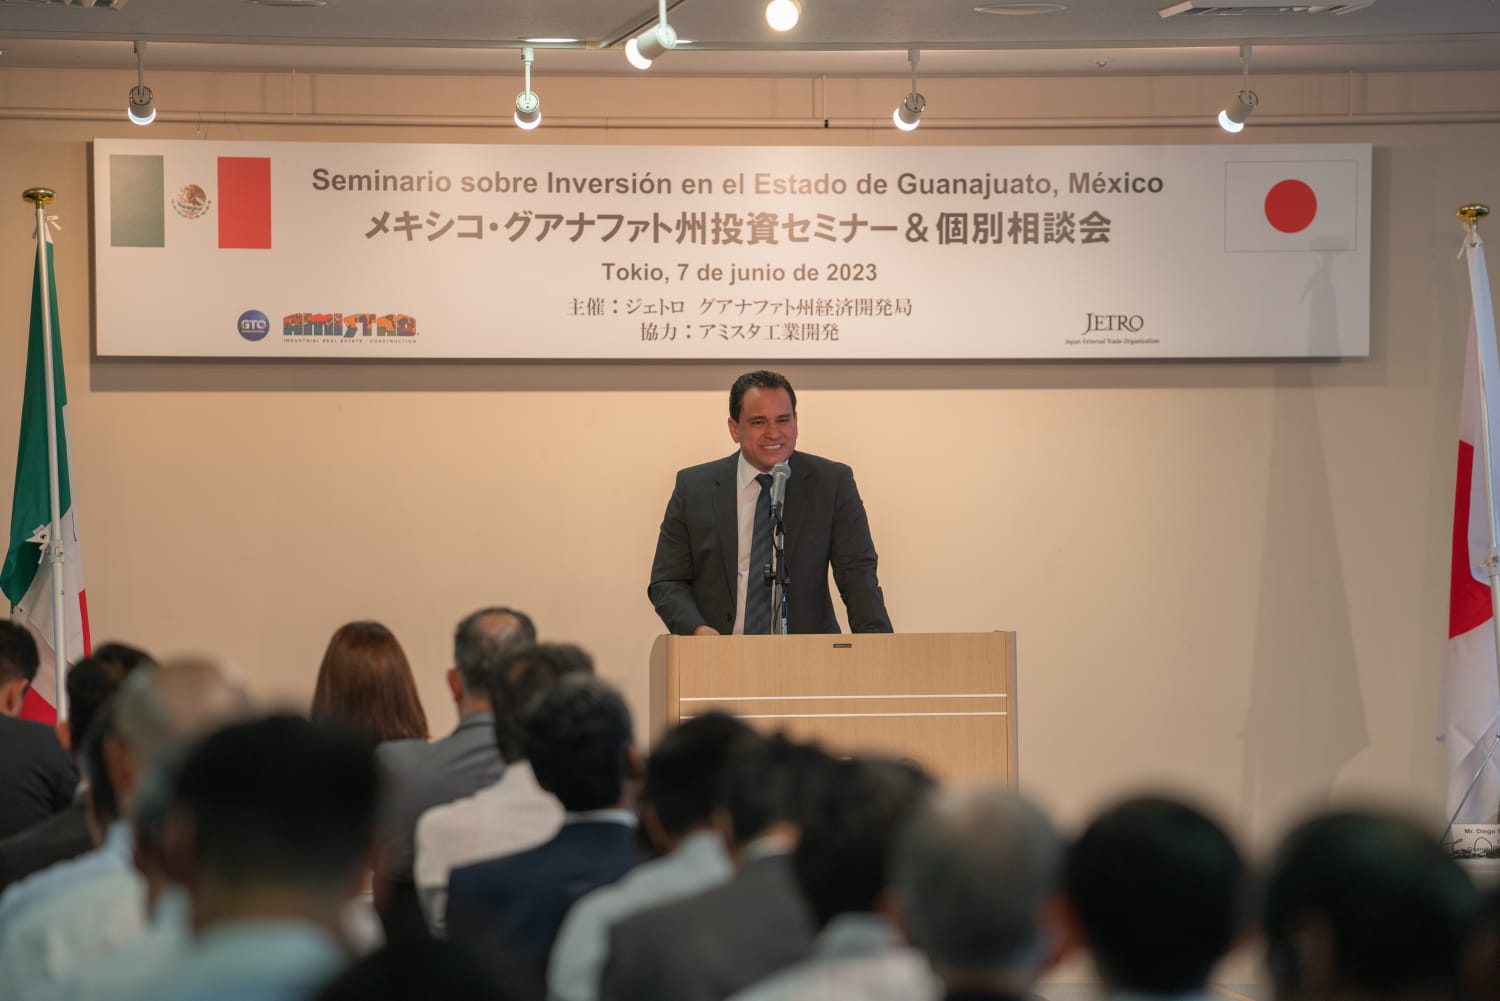 Grupo Amistad, presenta en Japón su historia de éxito en desarrollo industrial